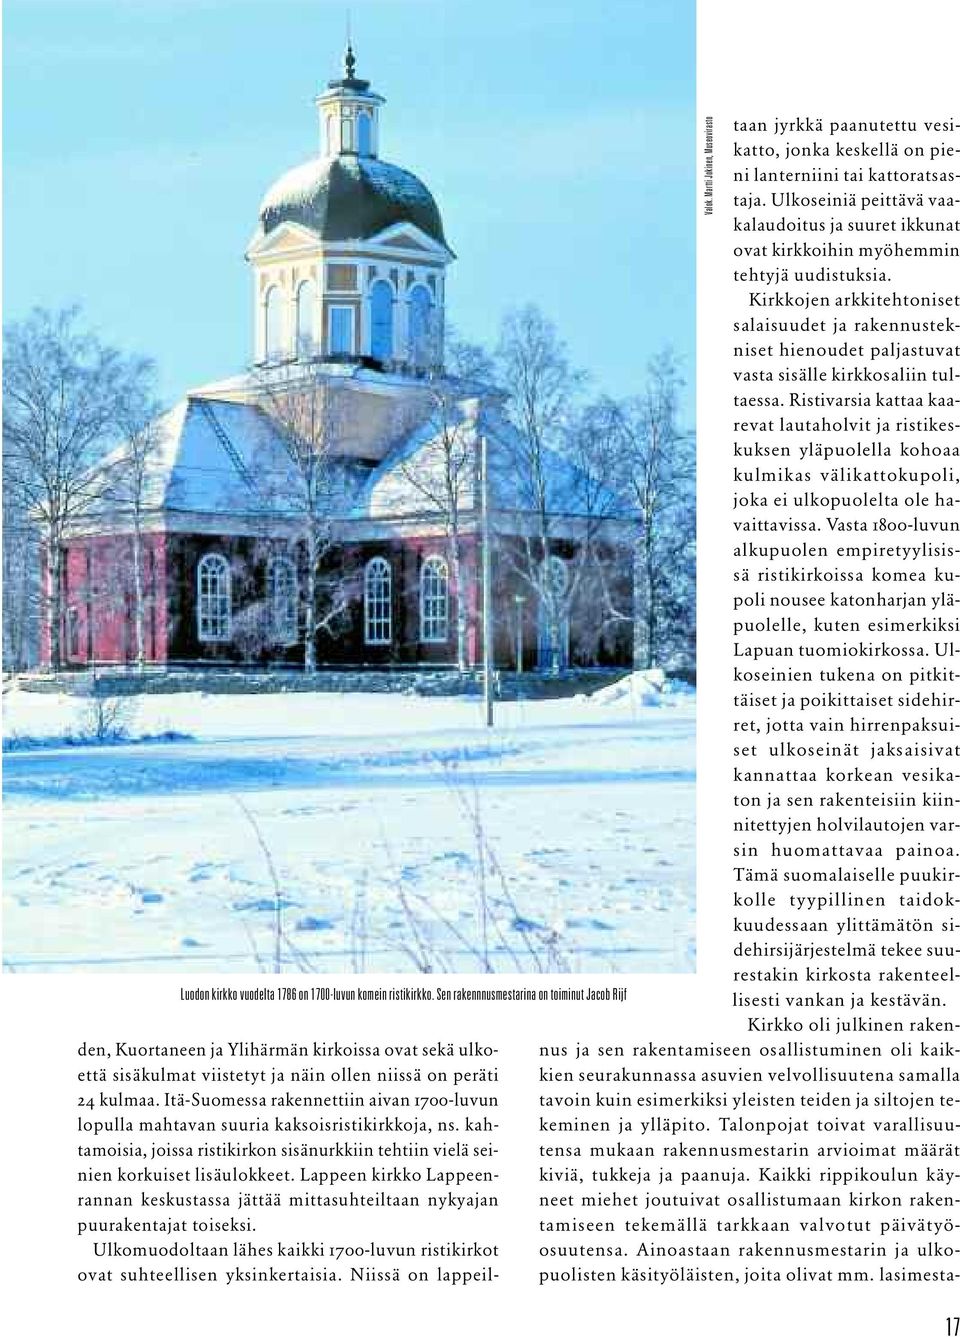 Itä-Suomessa rakennettiin aivan 1700-luvun lopulla mahtavan suuria kaksoisristikirkkoja, ns. kahtamoisia, joissa ristikirkon sisänurkkiin tehtiin vielä seinien korkuiset lisäulokkeet.